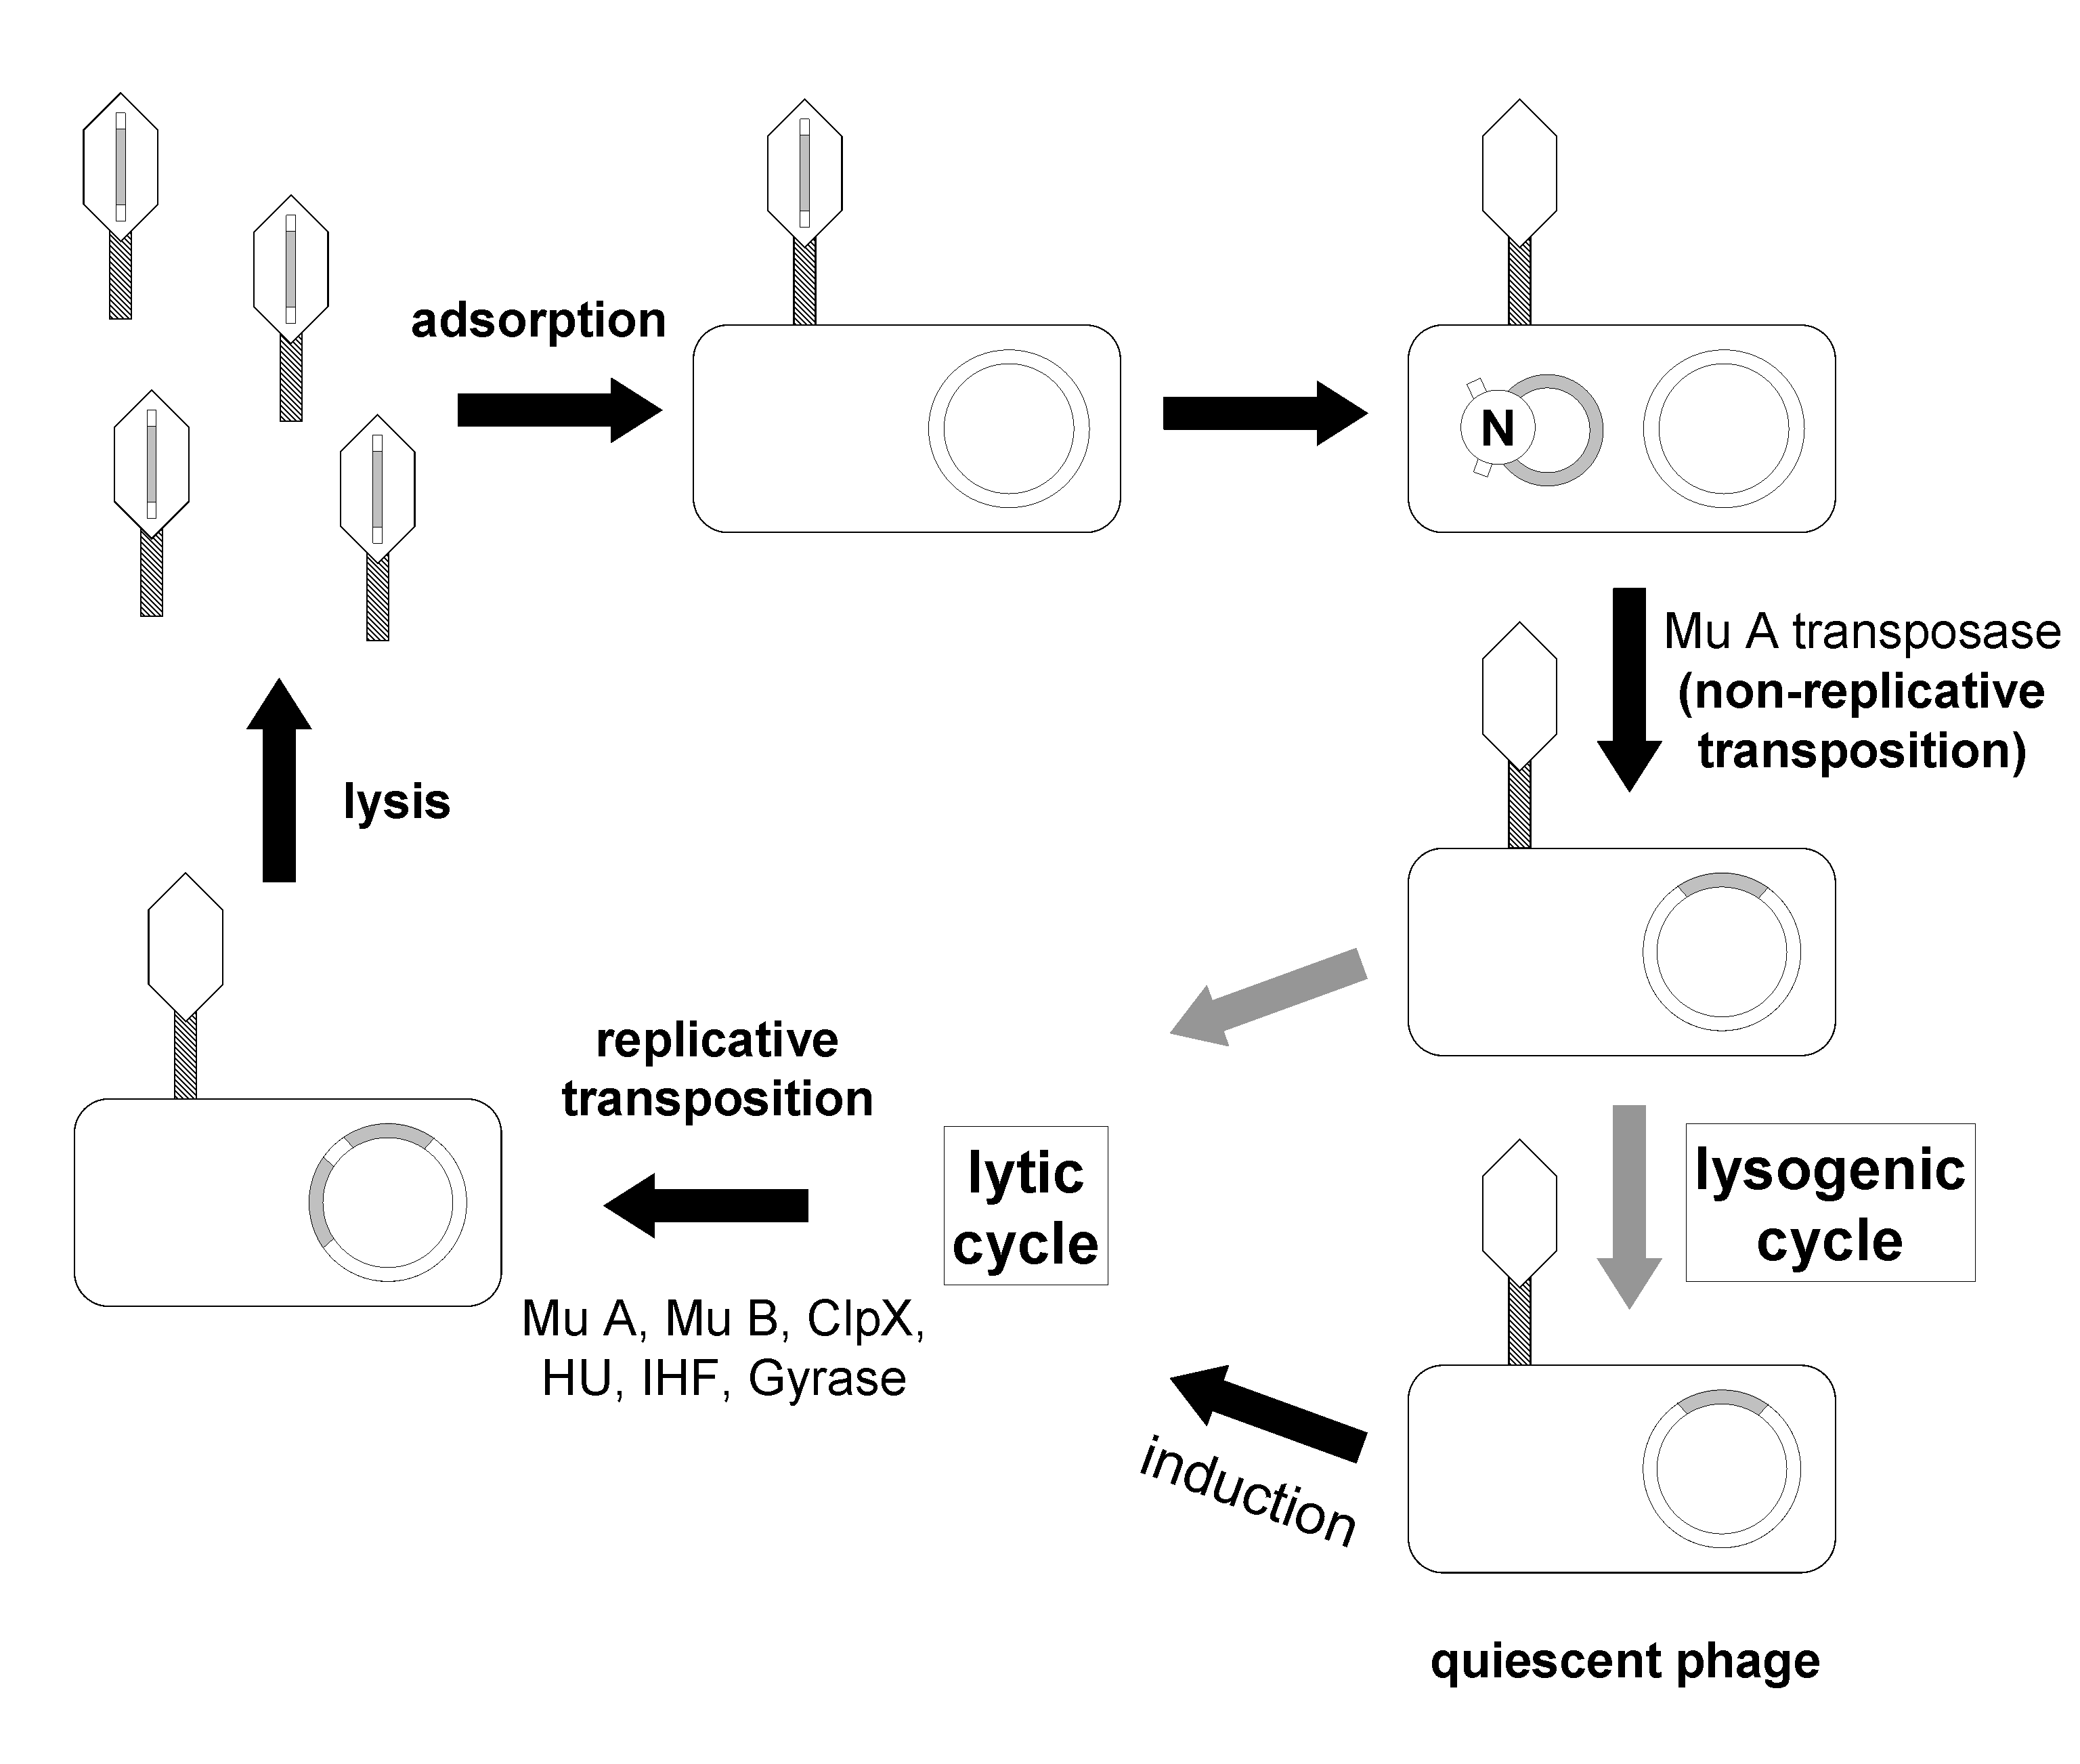 bacteriophage life cycle